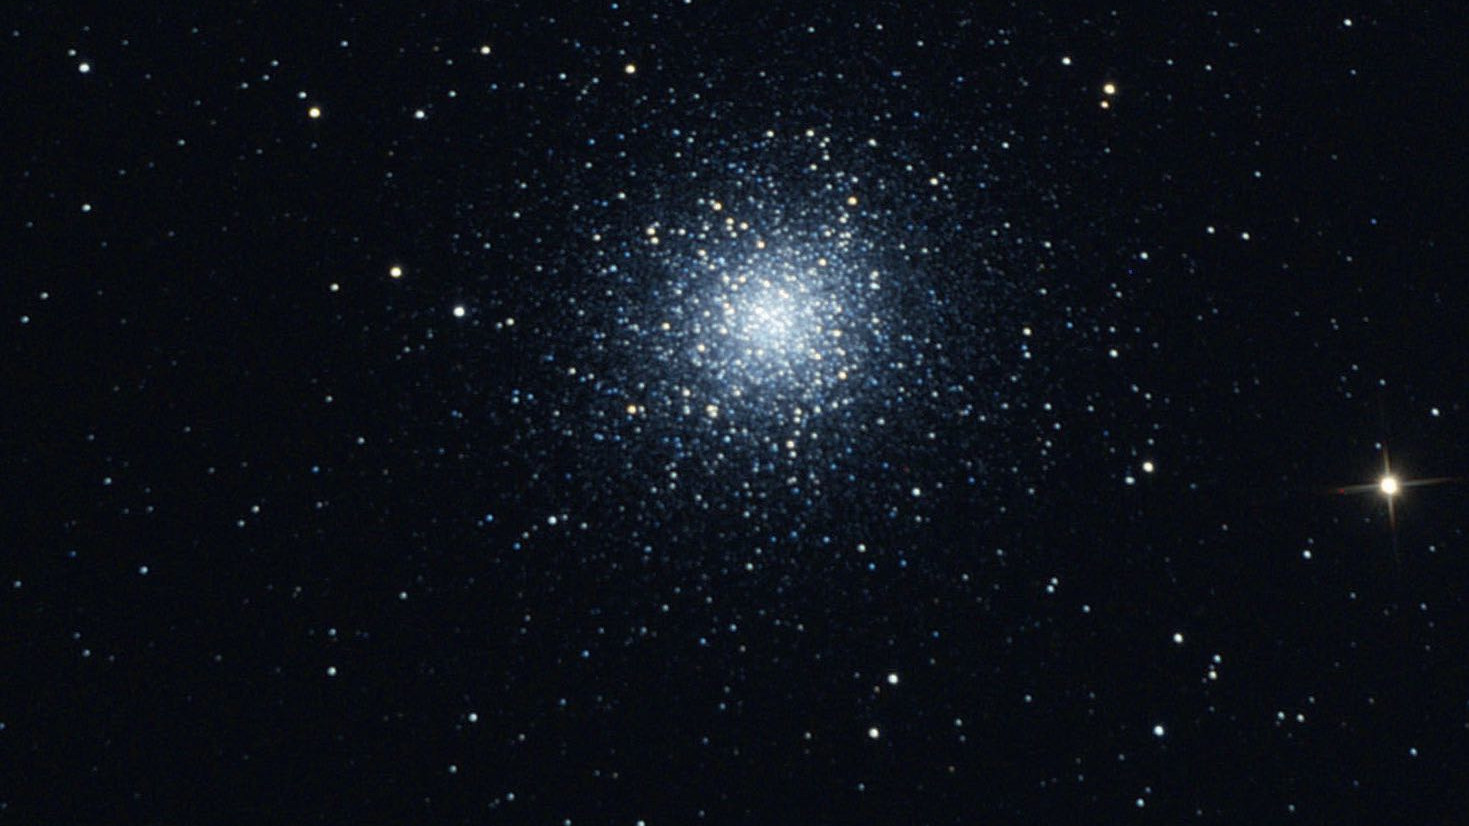 M13 låter sig inte särskiljas i detalj med kikare, men den kan ändå identifieras som en klotformig stjärnhop. Marcus Degenkolbe.